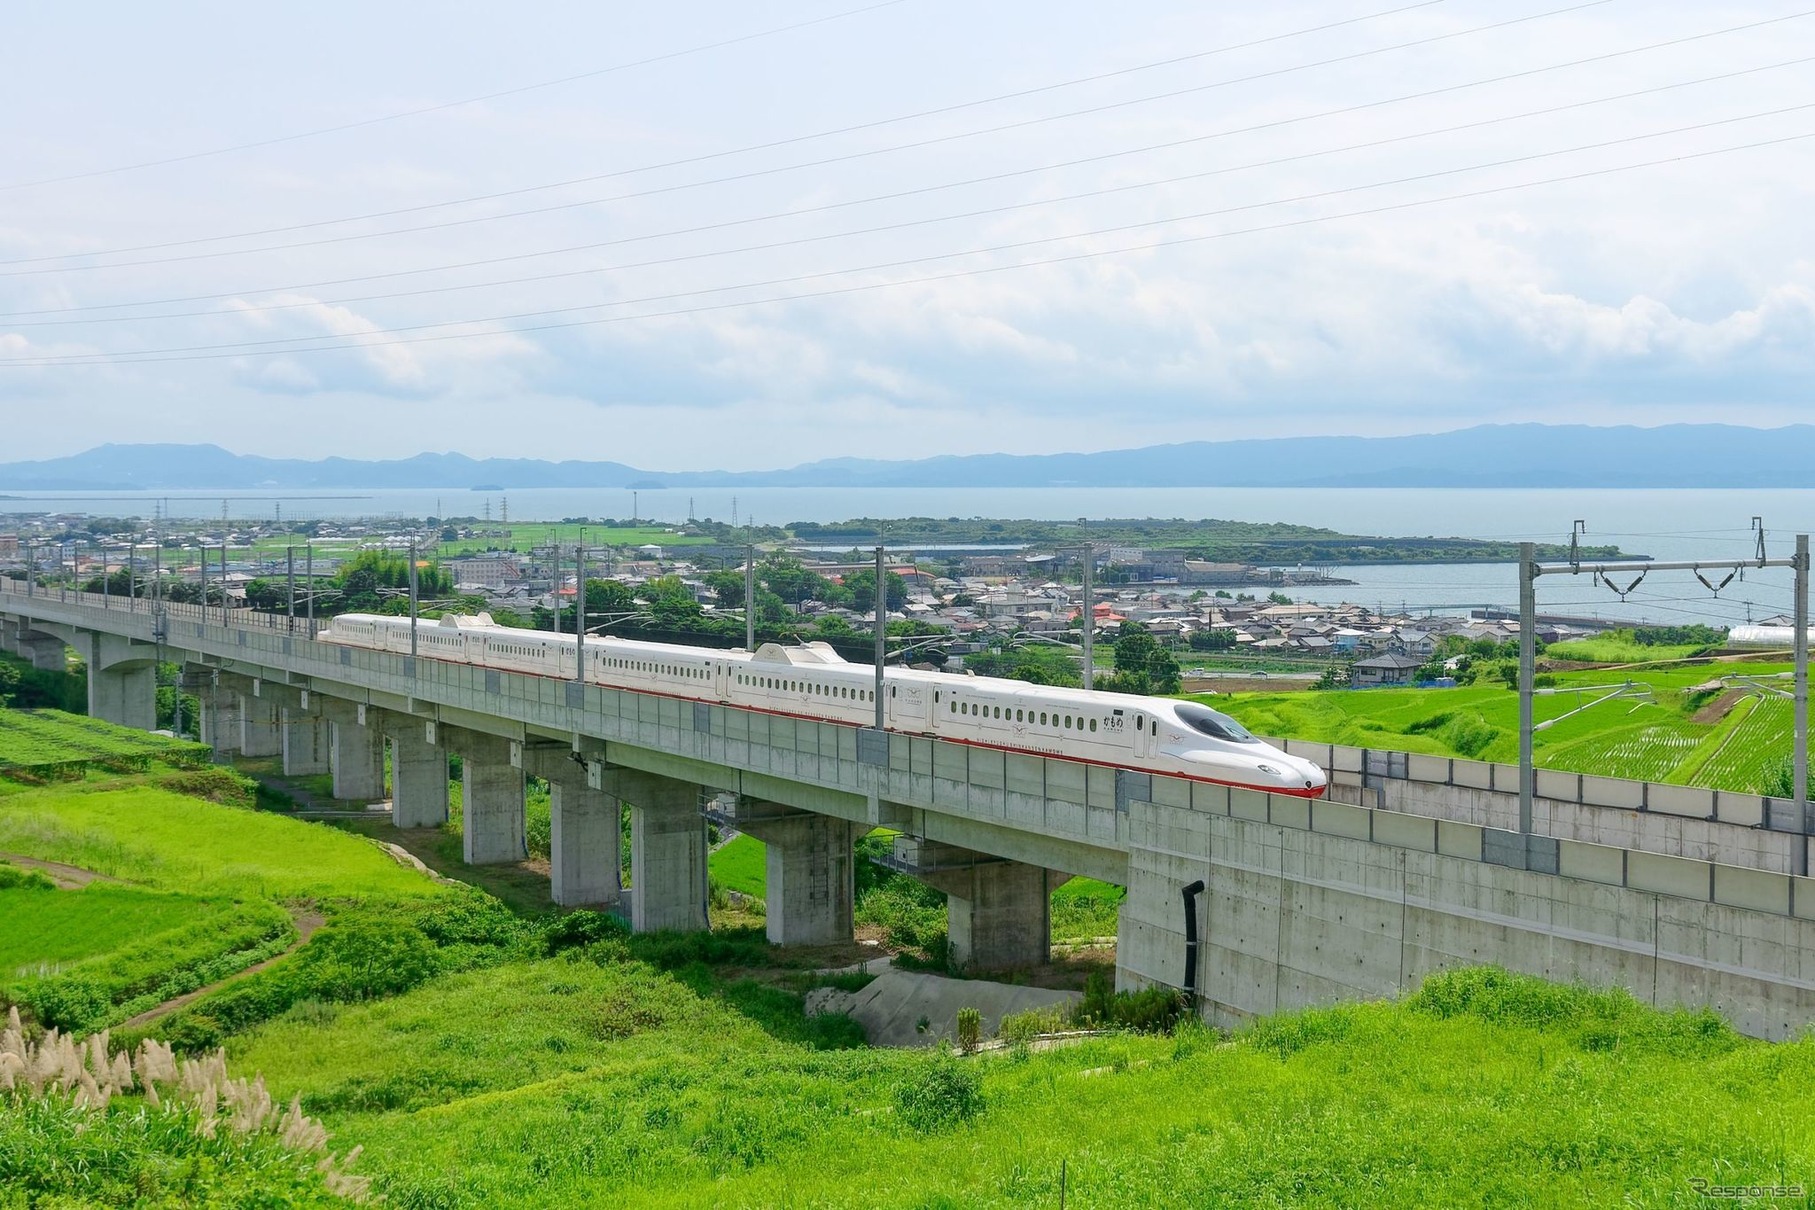 長崎県大村市内を走る西九州新幹線の試運転列車。